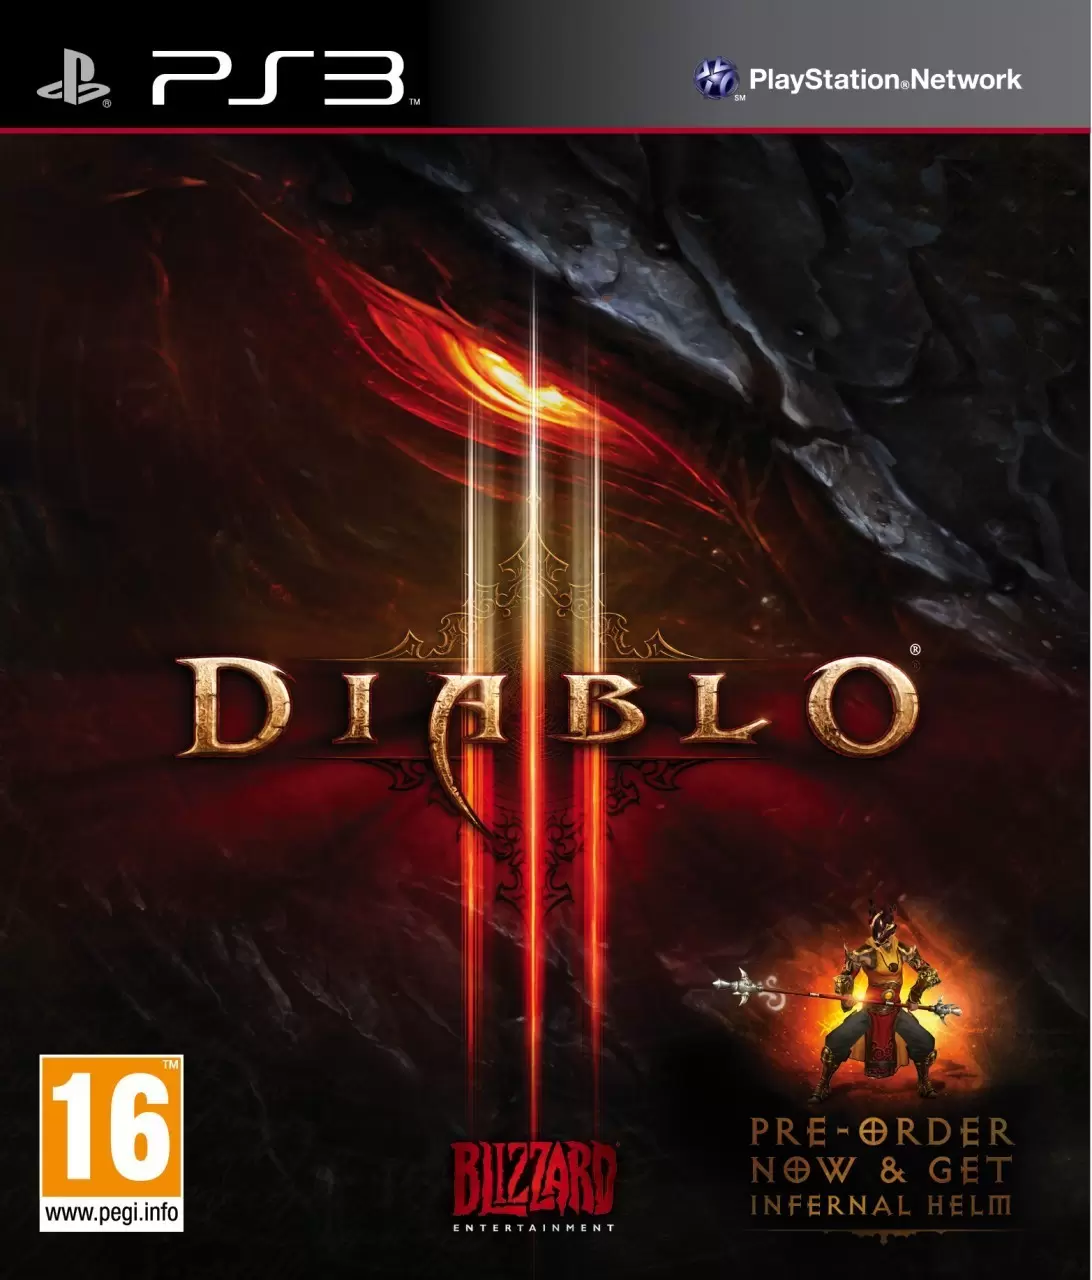 PS3 Games - Diablo III